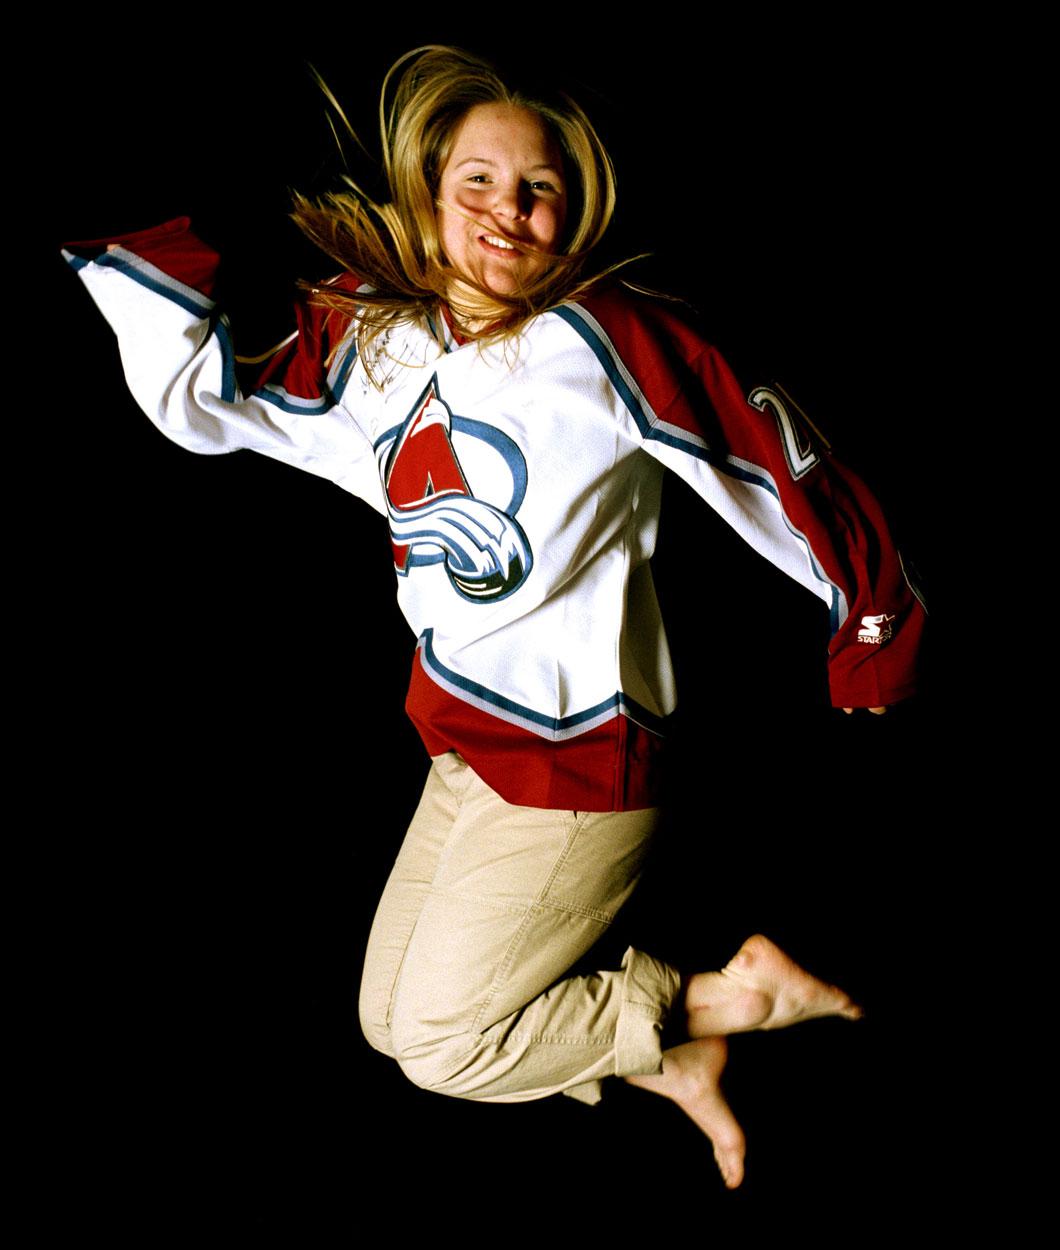 1999 Anja Pärson iklädd amerikanska hockeylaget Colorado Avalanches matchtröja.